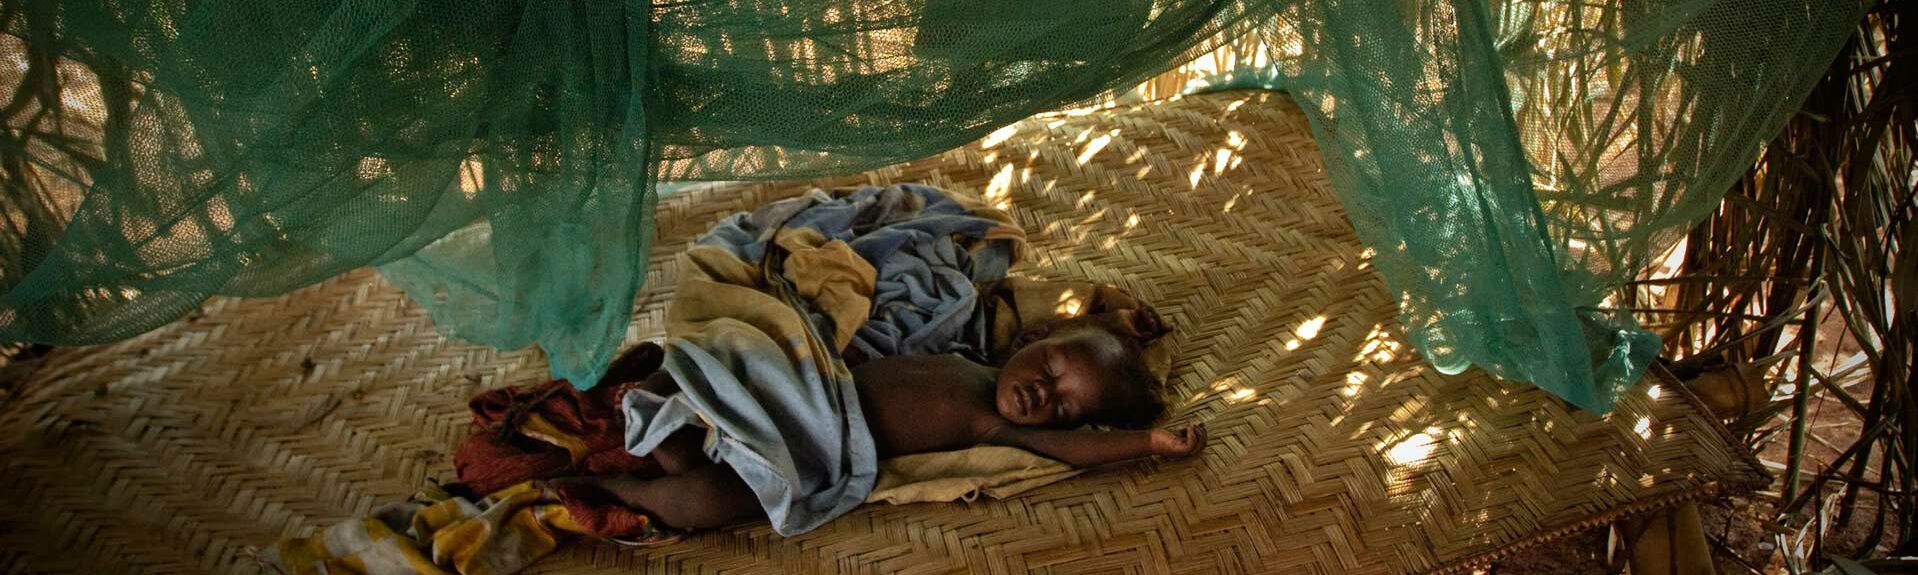 Malaria, Kind schläft unter Vorhängen